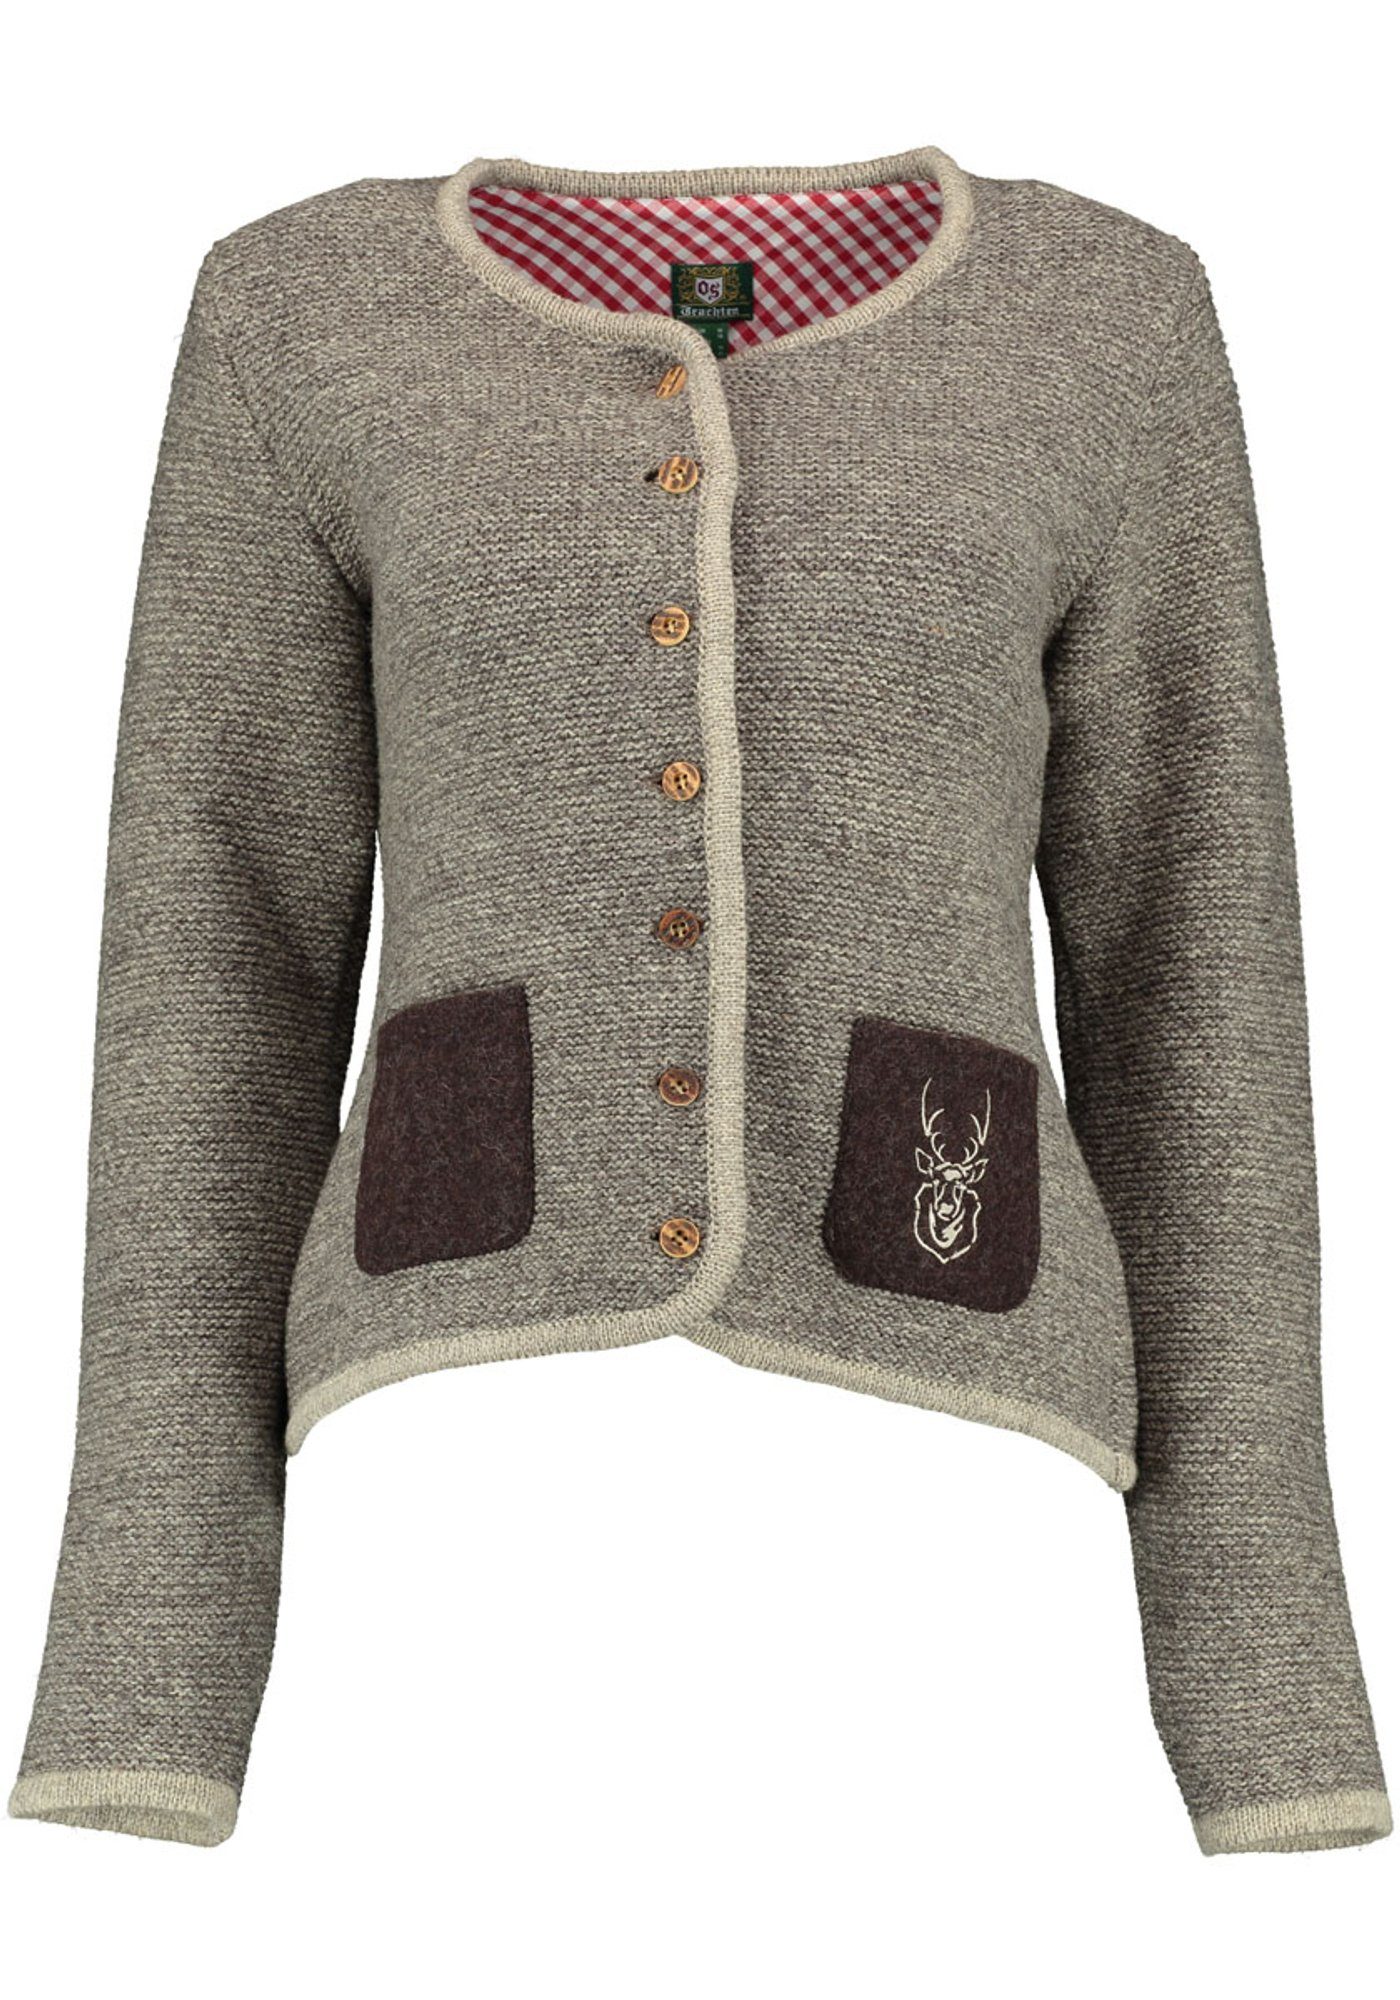 OS-Trachten Strickjacke Leunar Trachtenjacke aus Wolle mit  Hirsch-Stickereien auf Tasche und Rücken